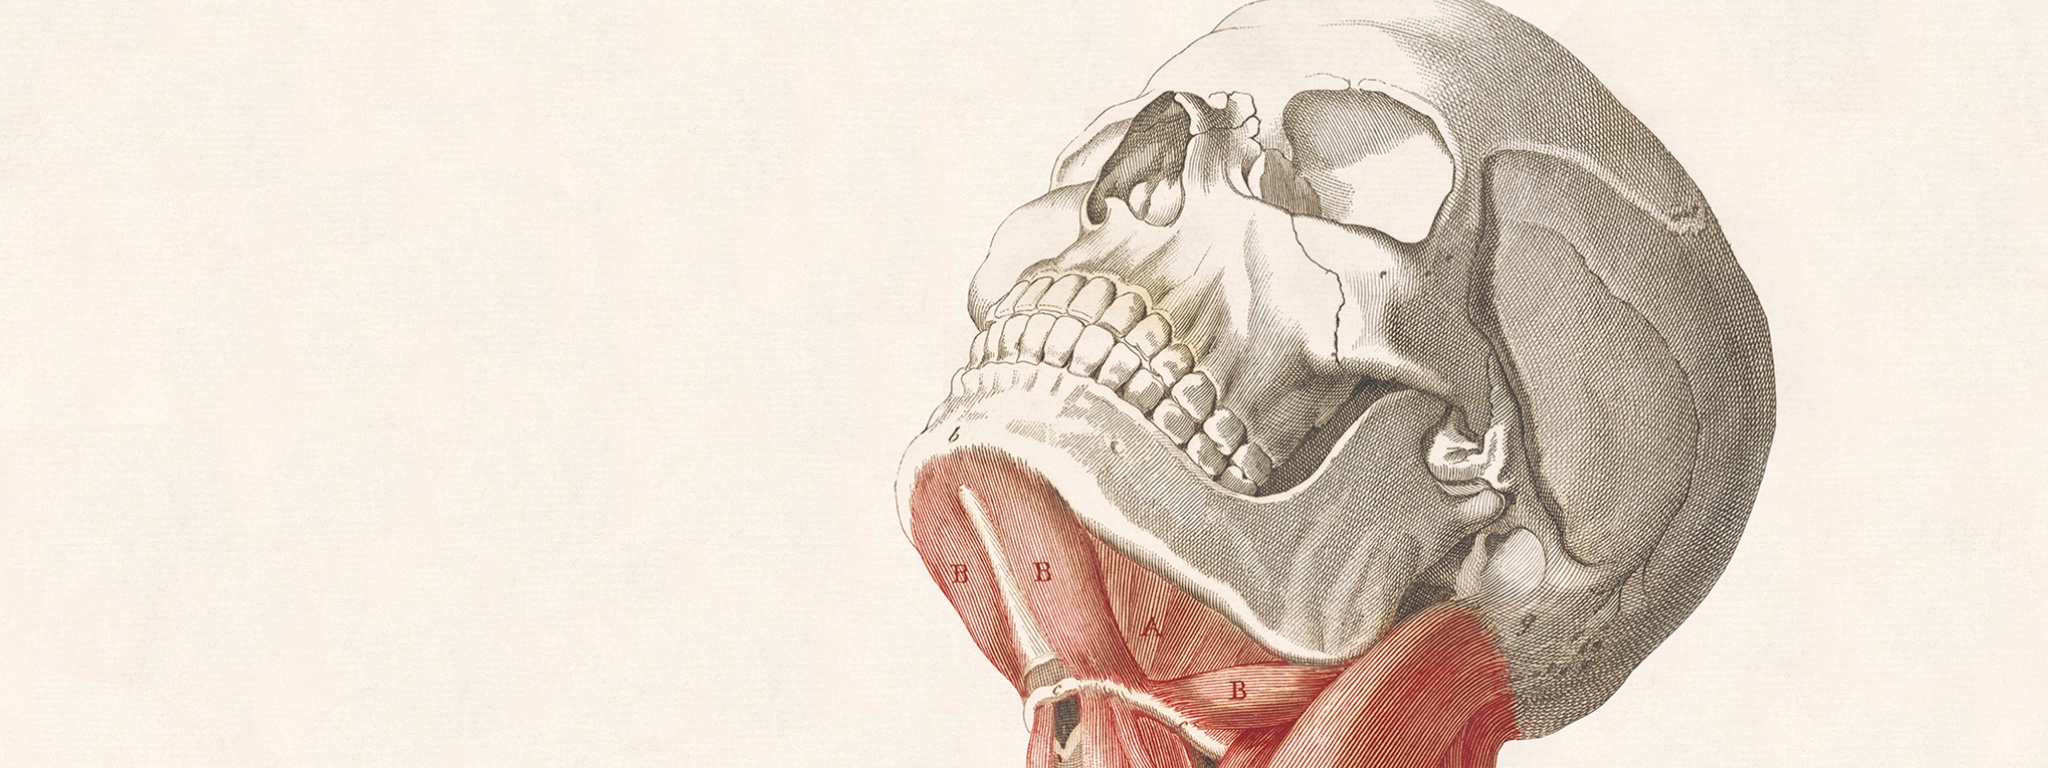 Flesh and Bones: The Art of Anatomy